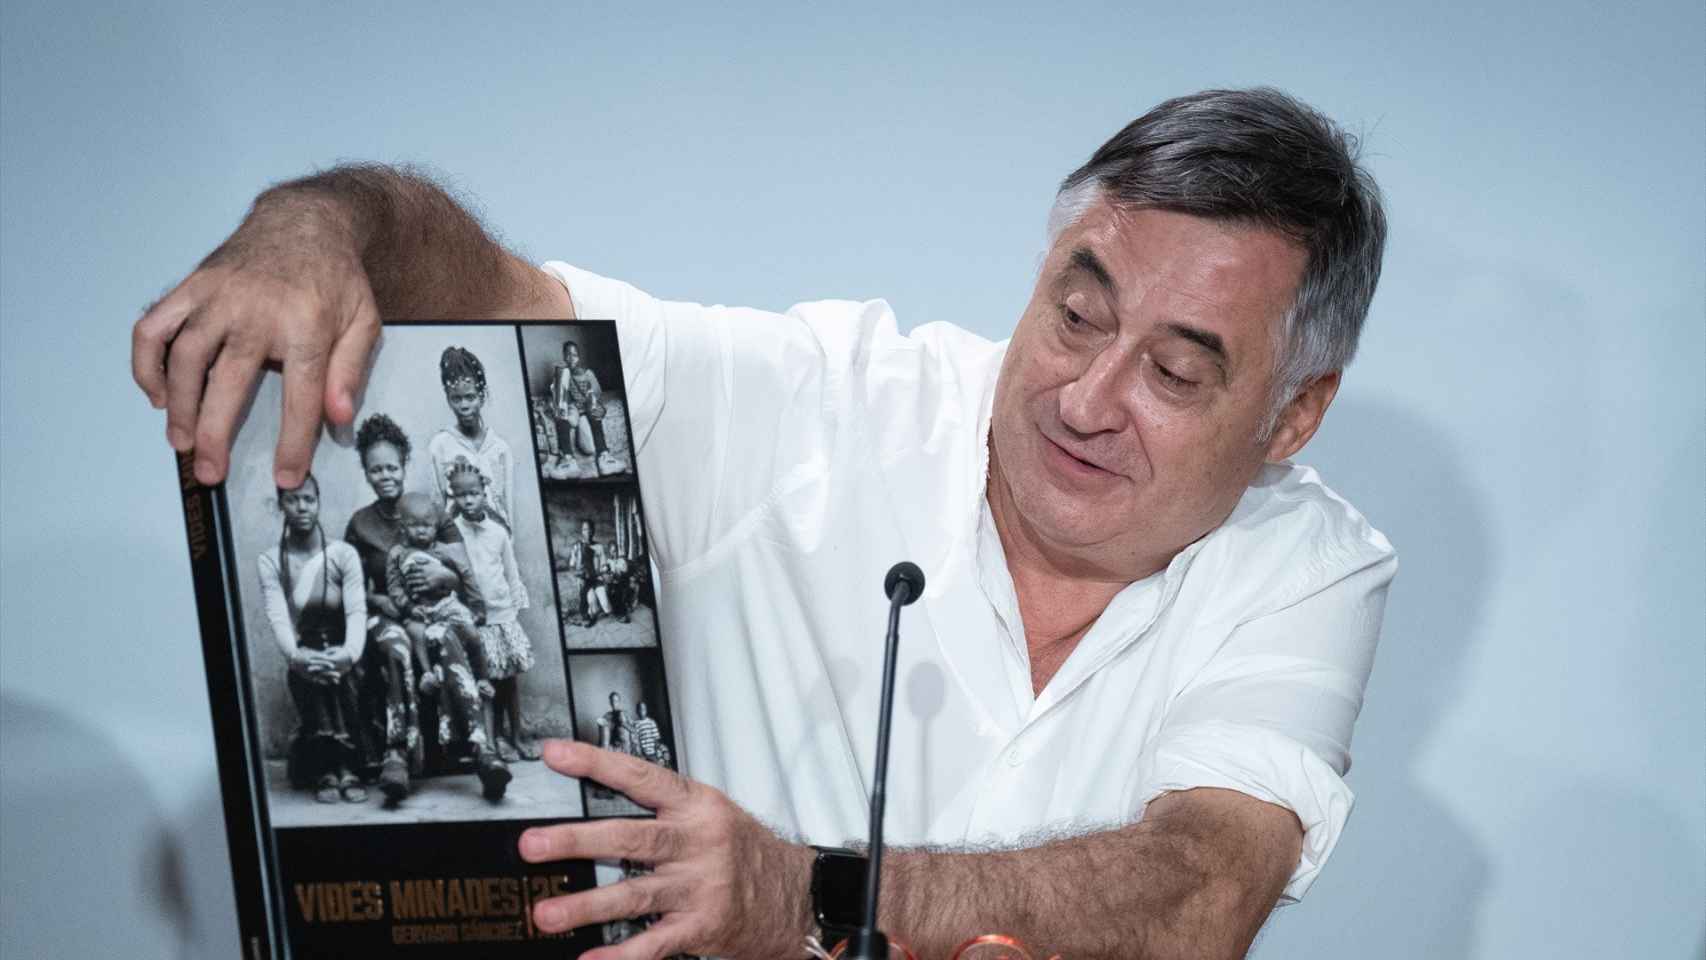 El fotoperiodista Gervasio Sánchez presenta su libro ‘Vidas minadas. 25 años’ / Foto:  David Zorrakino / Europa Press.